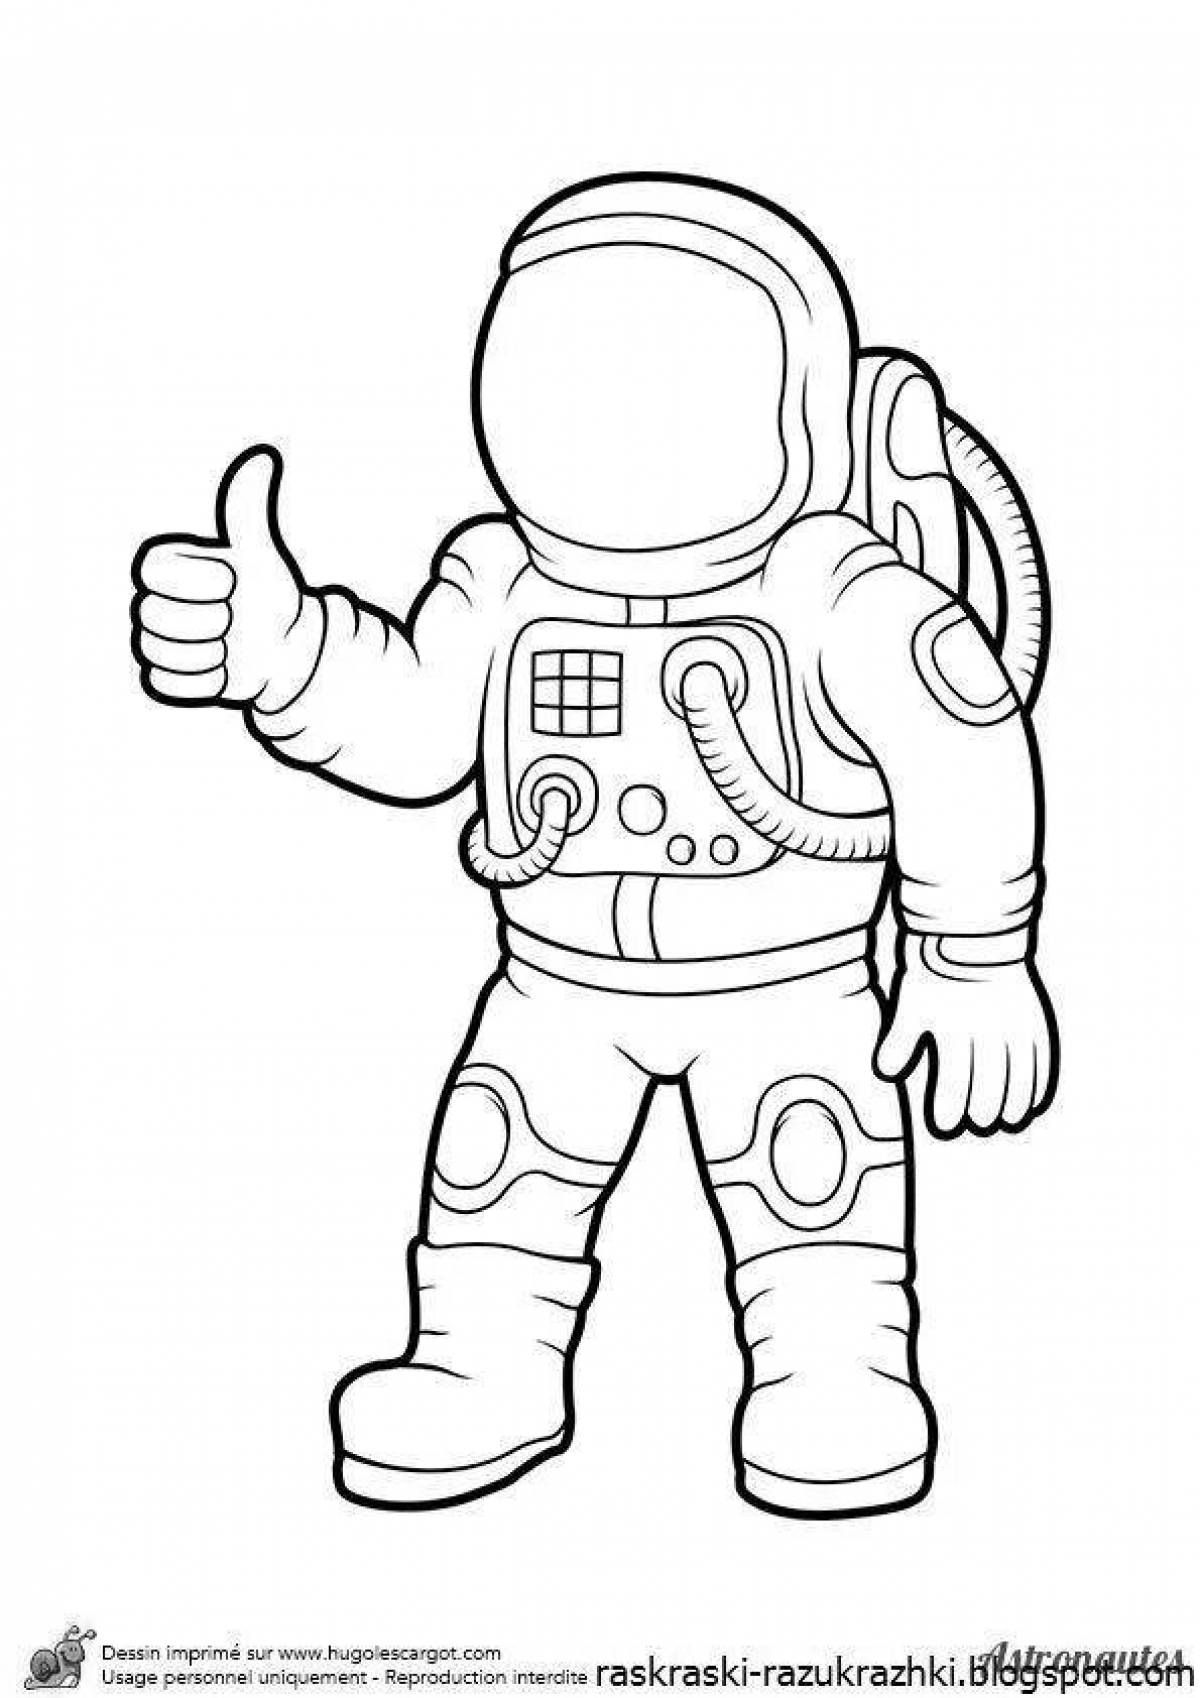 Распечатать космонавта для поделки. Раскраска космонавт в скафандре. Космонавт раскраска для детей. Раскраска Космонавта в скафандре для детей. Космонавт раскраска для малышей.